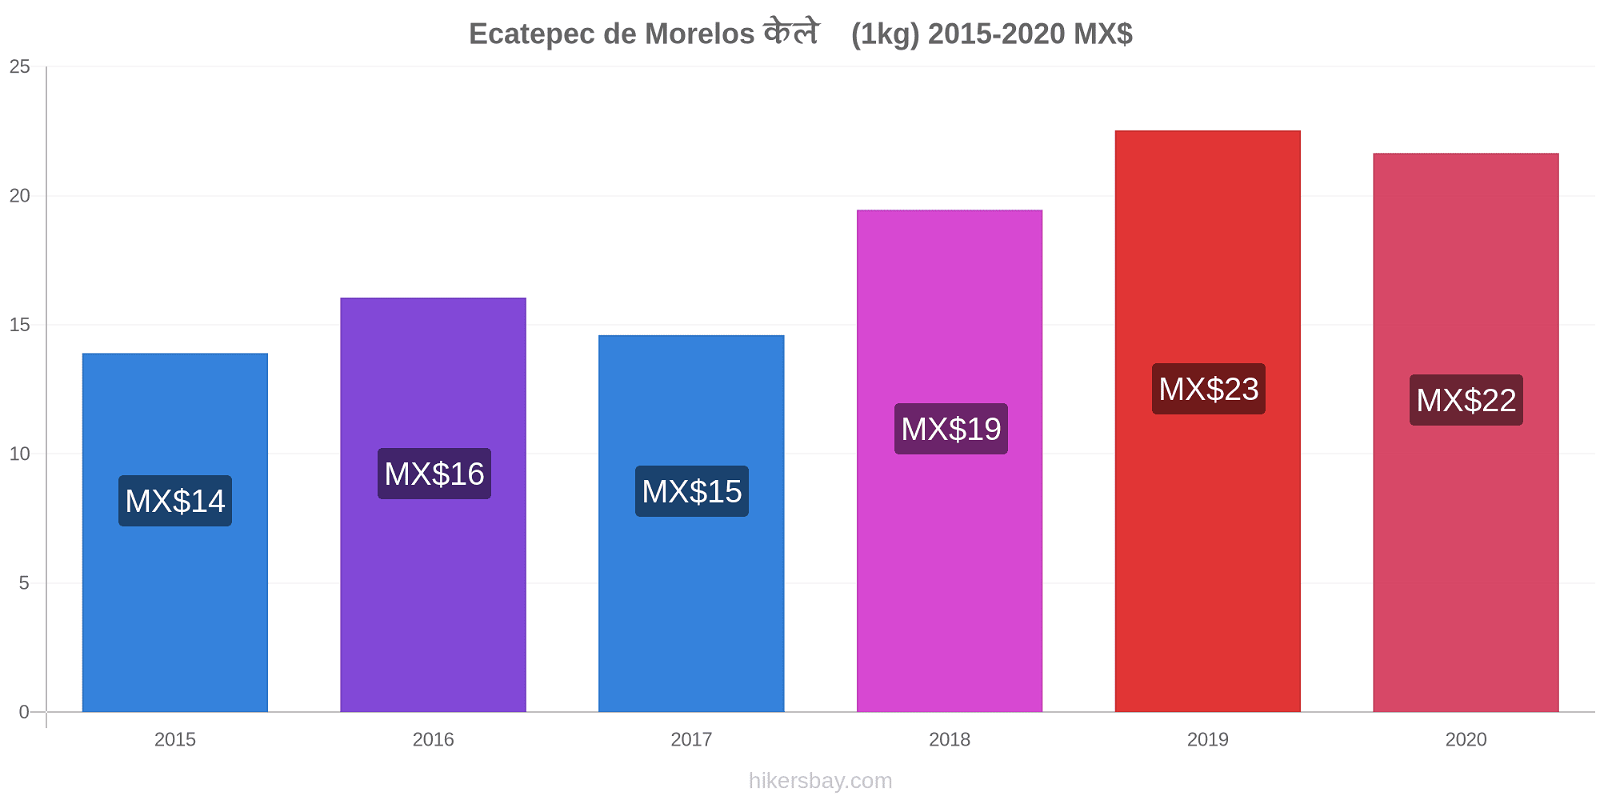 Ecatepec de Morelos मूल्य परिवर्तन केले (1kg) hikersbay.com